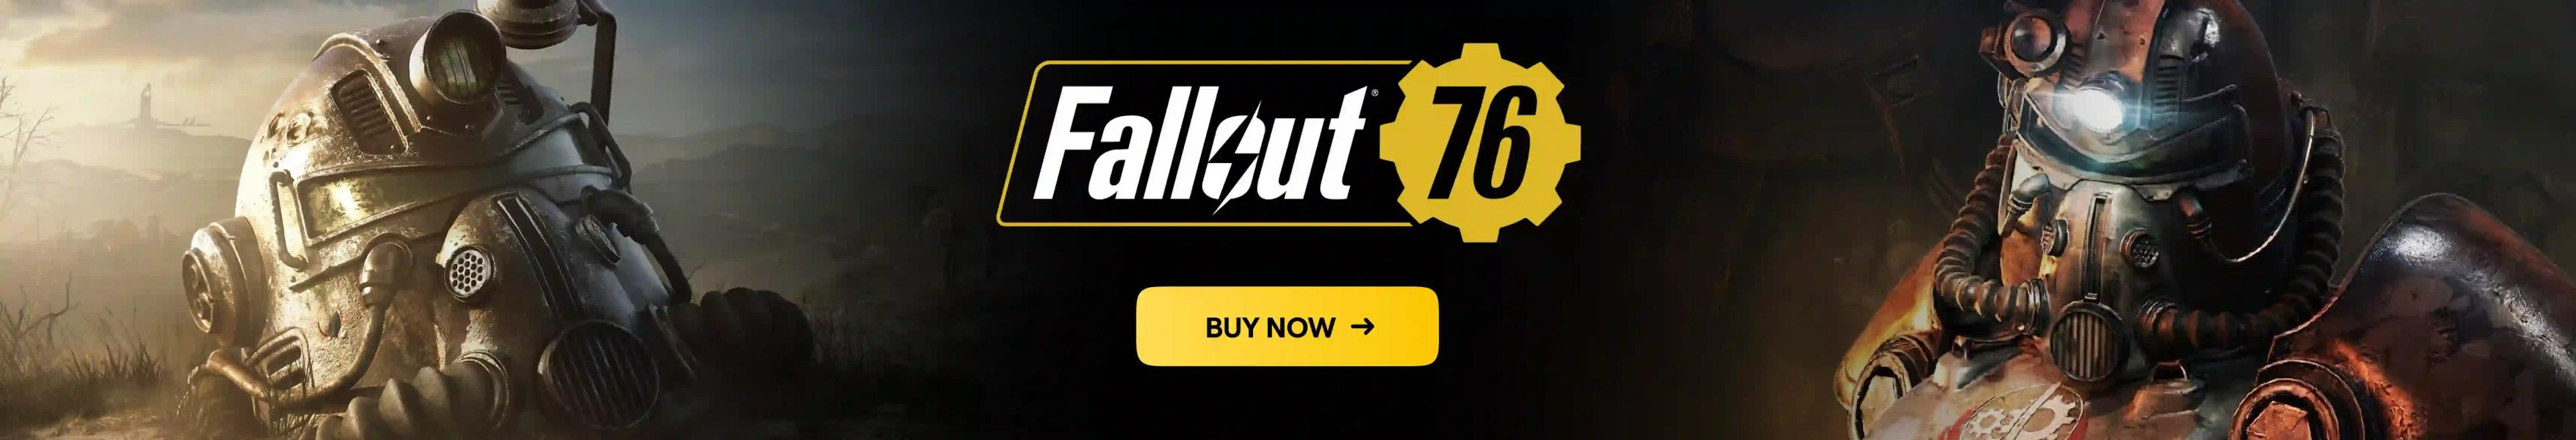 Fallout 76 Desktop